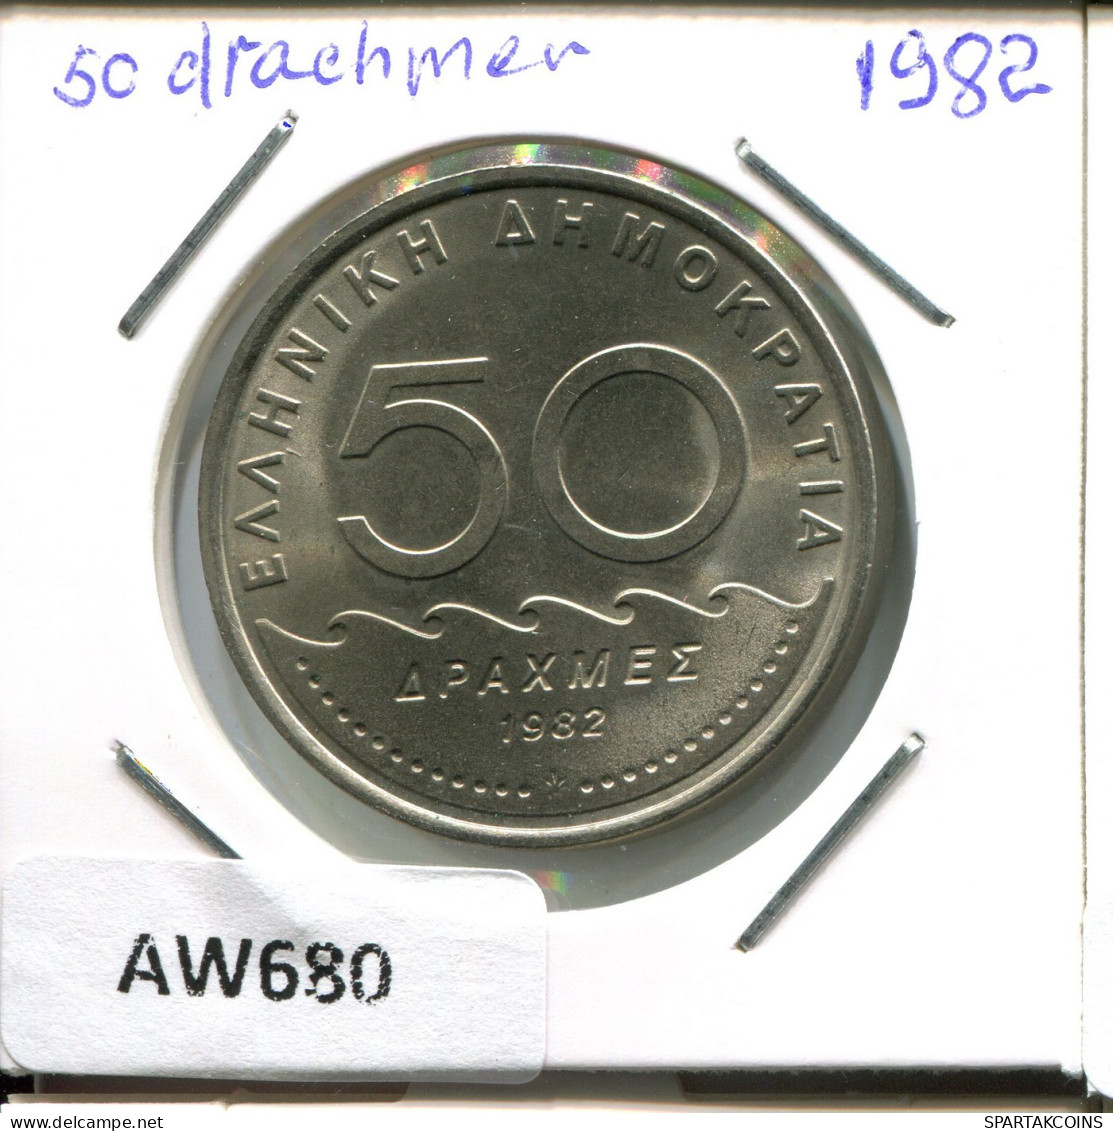 50 DRACHMES 1982 GREECE Coin #AW680.U.A - Greece